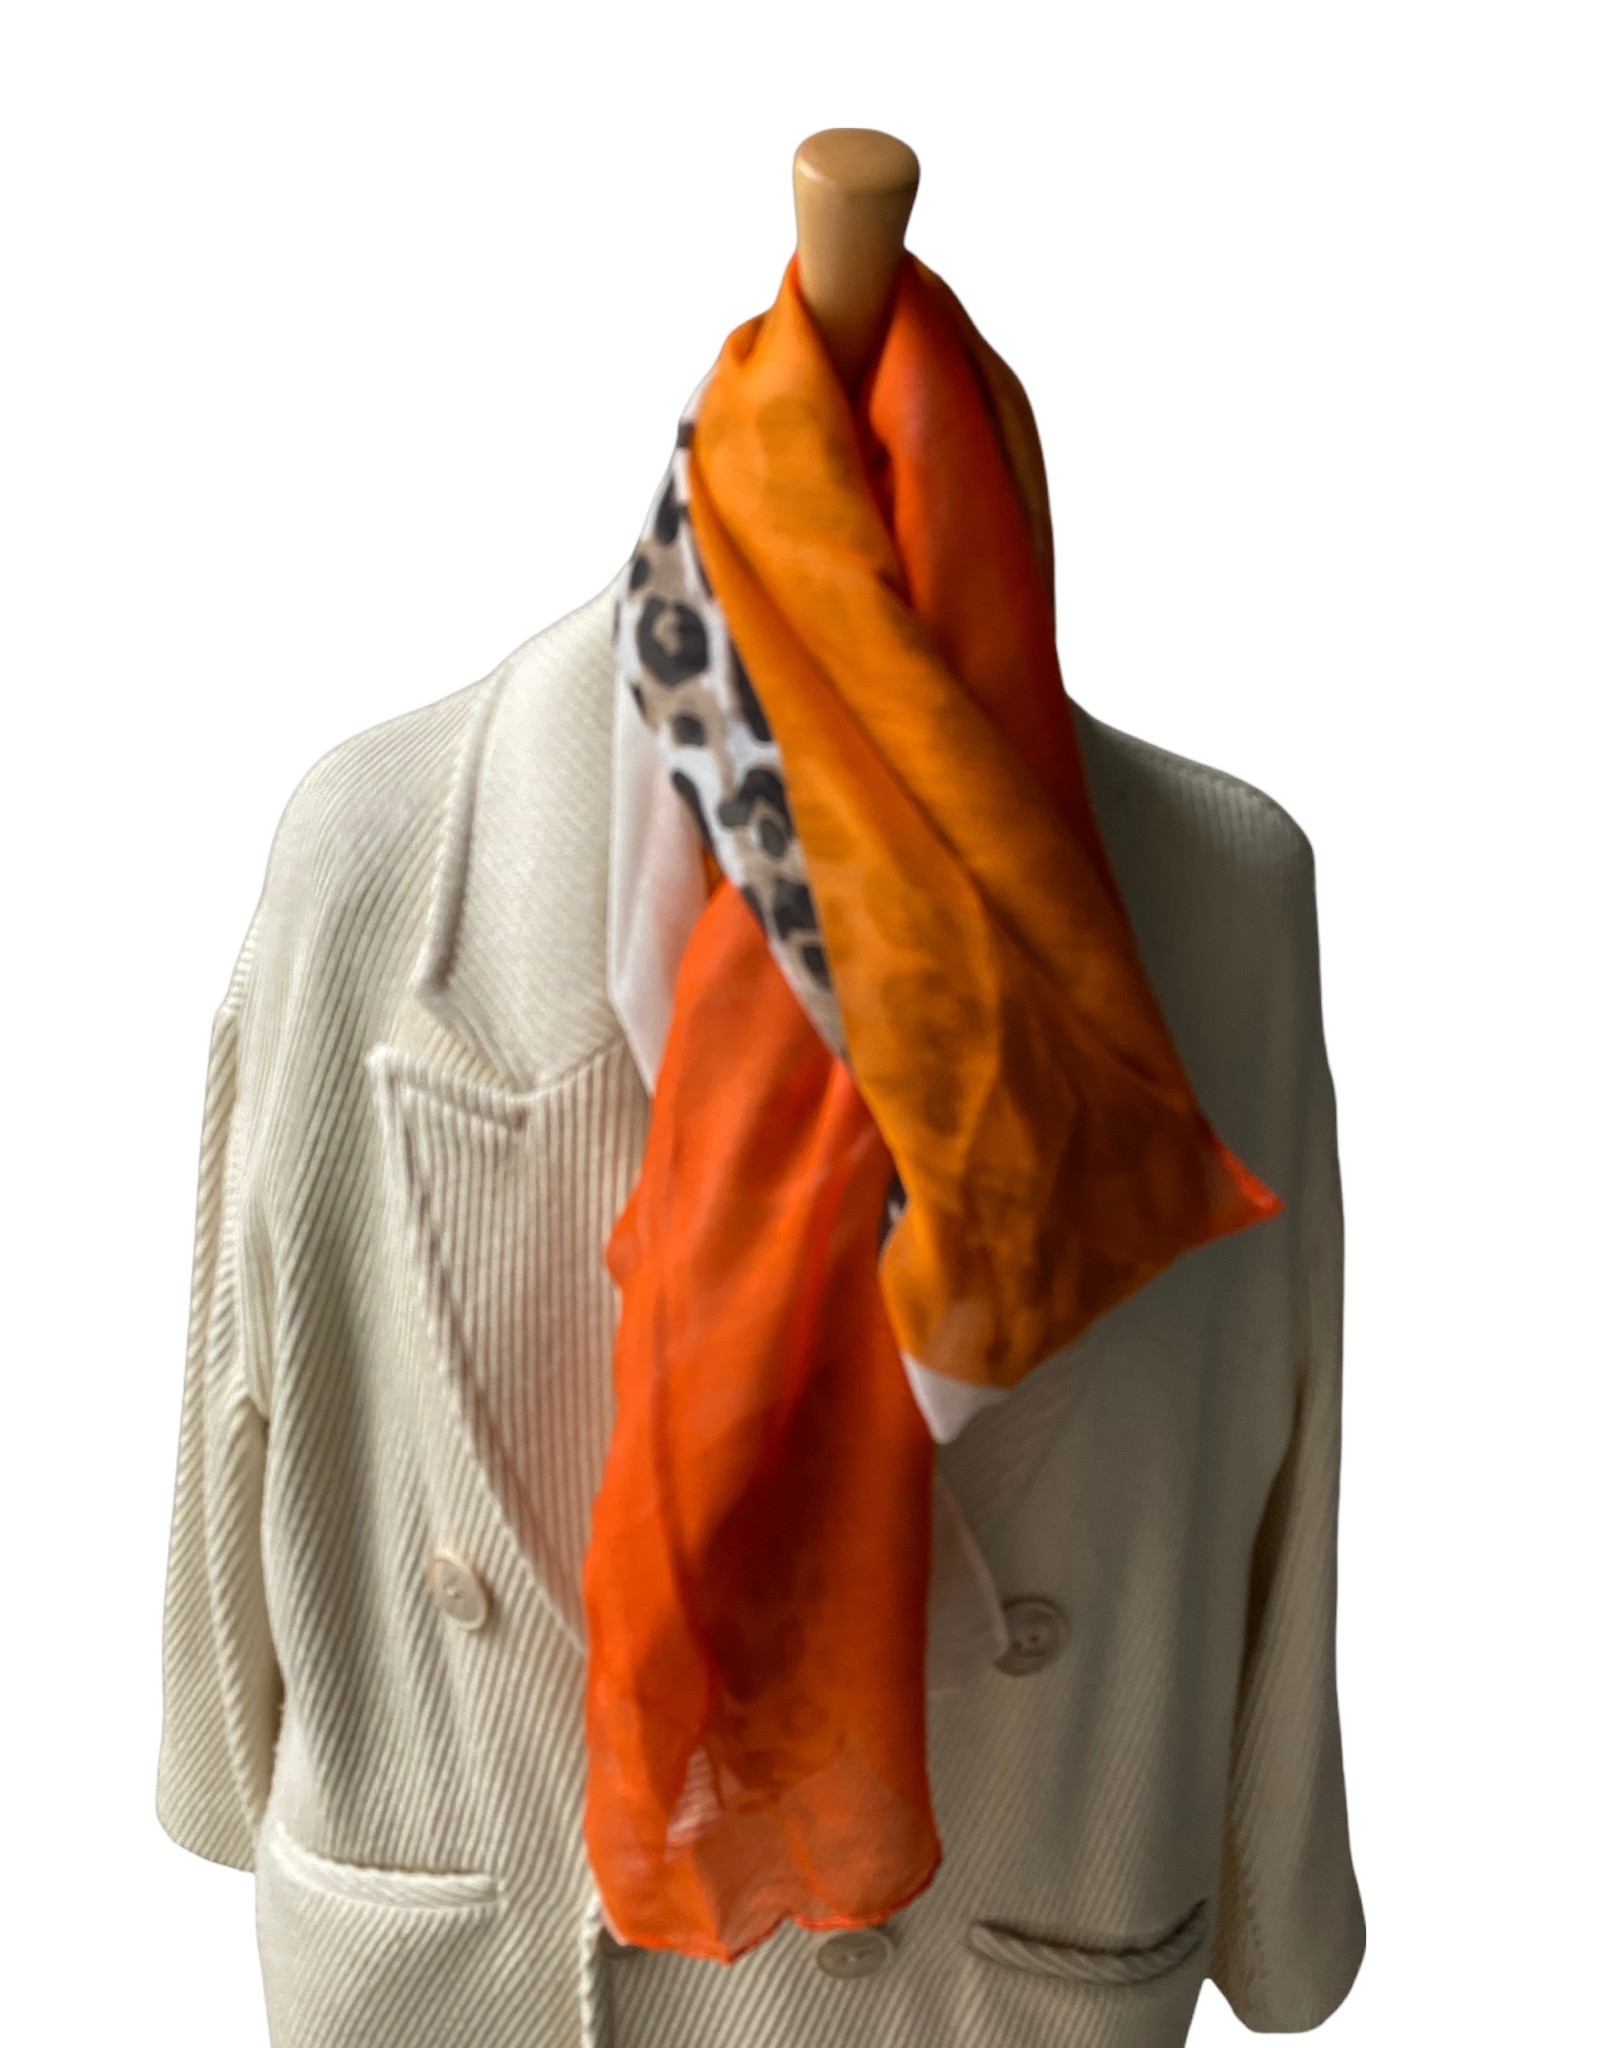 Katoenen sjaal langwerpig met panterprint en oranje  kleuren.